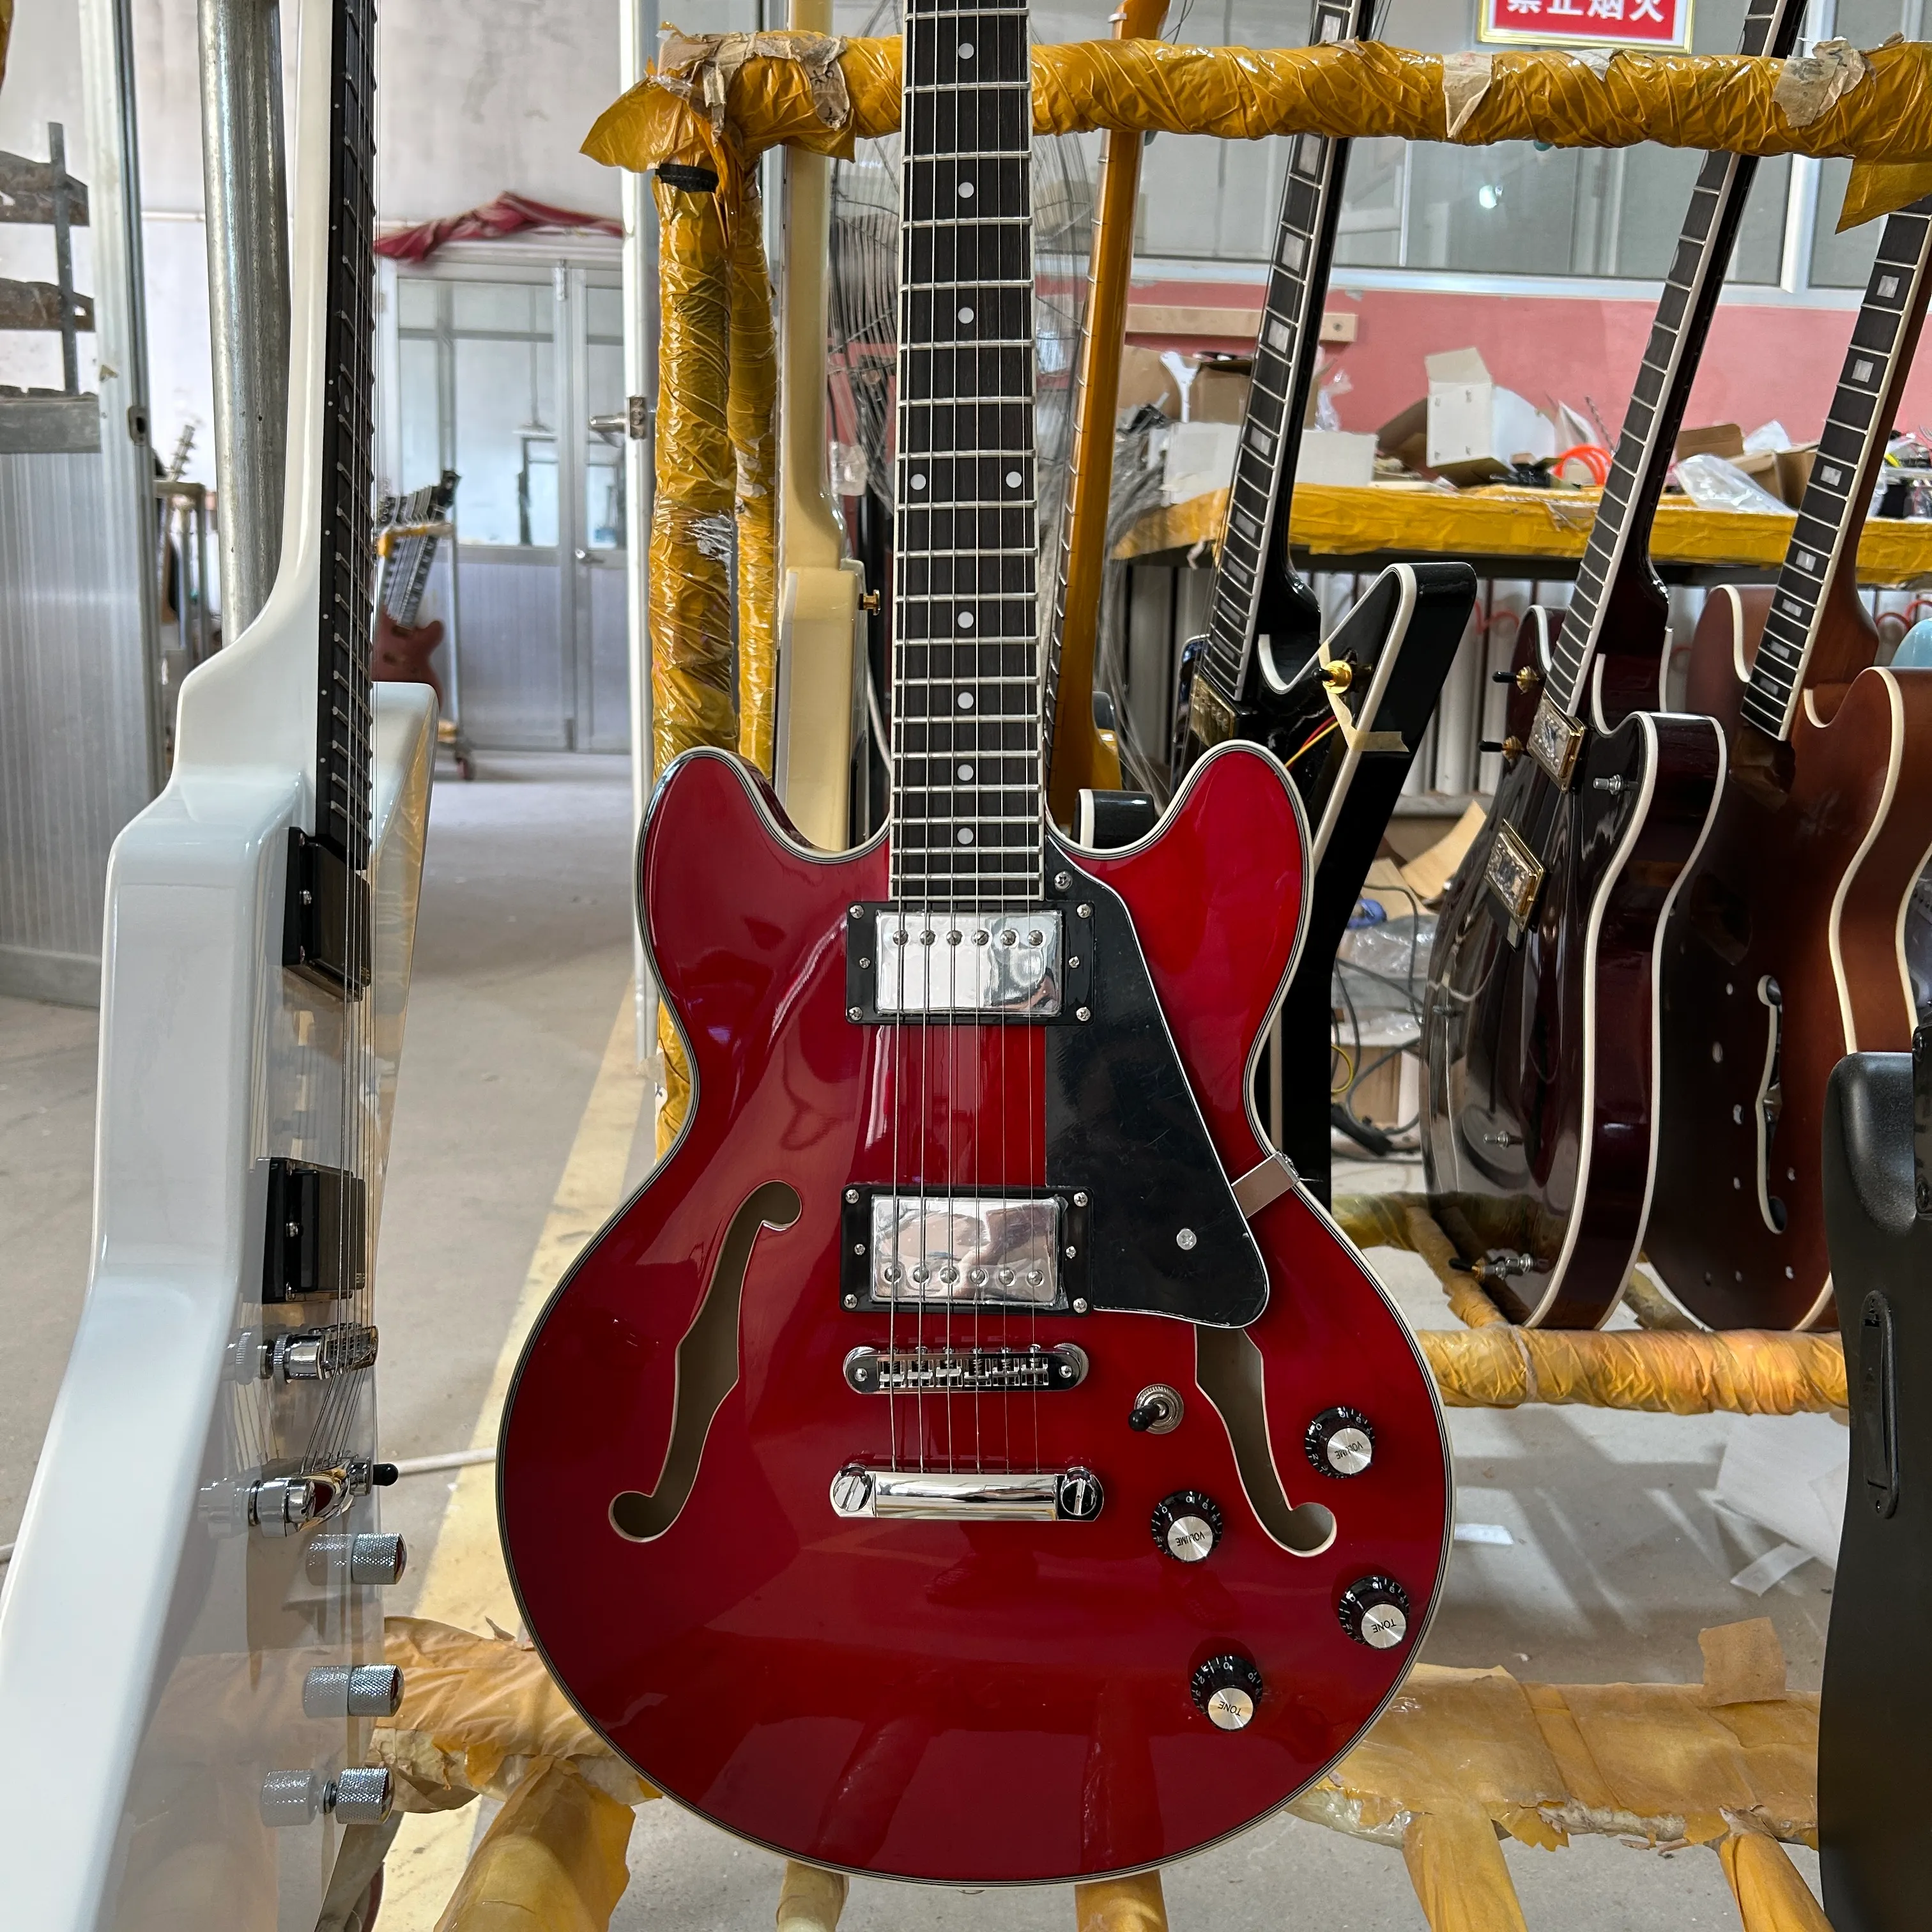 339 E-Gitarre, halbhohler Korpus, transparente rote Farbe, Griffbrett aus Palisander, silbernes Zubehör, kostenloser Versand